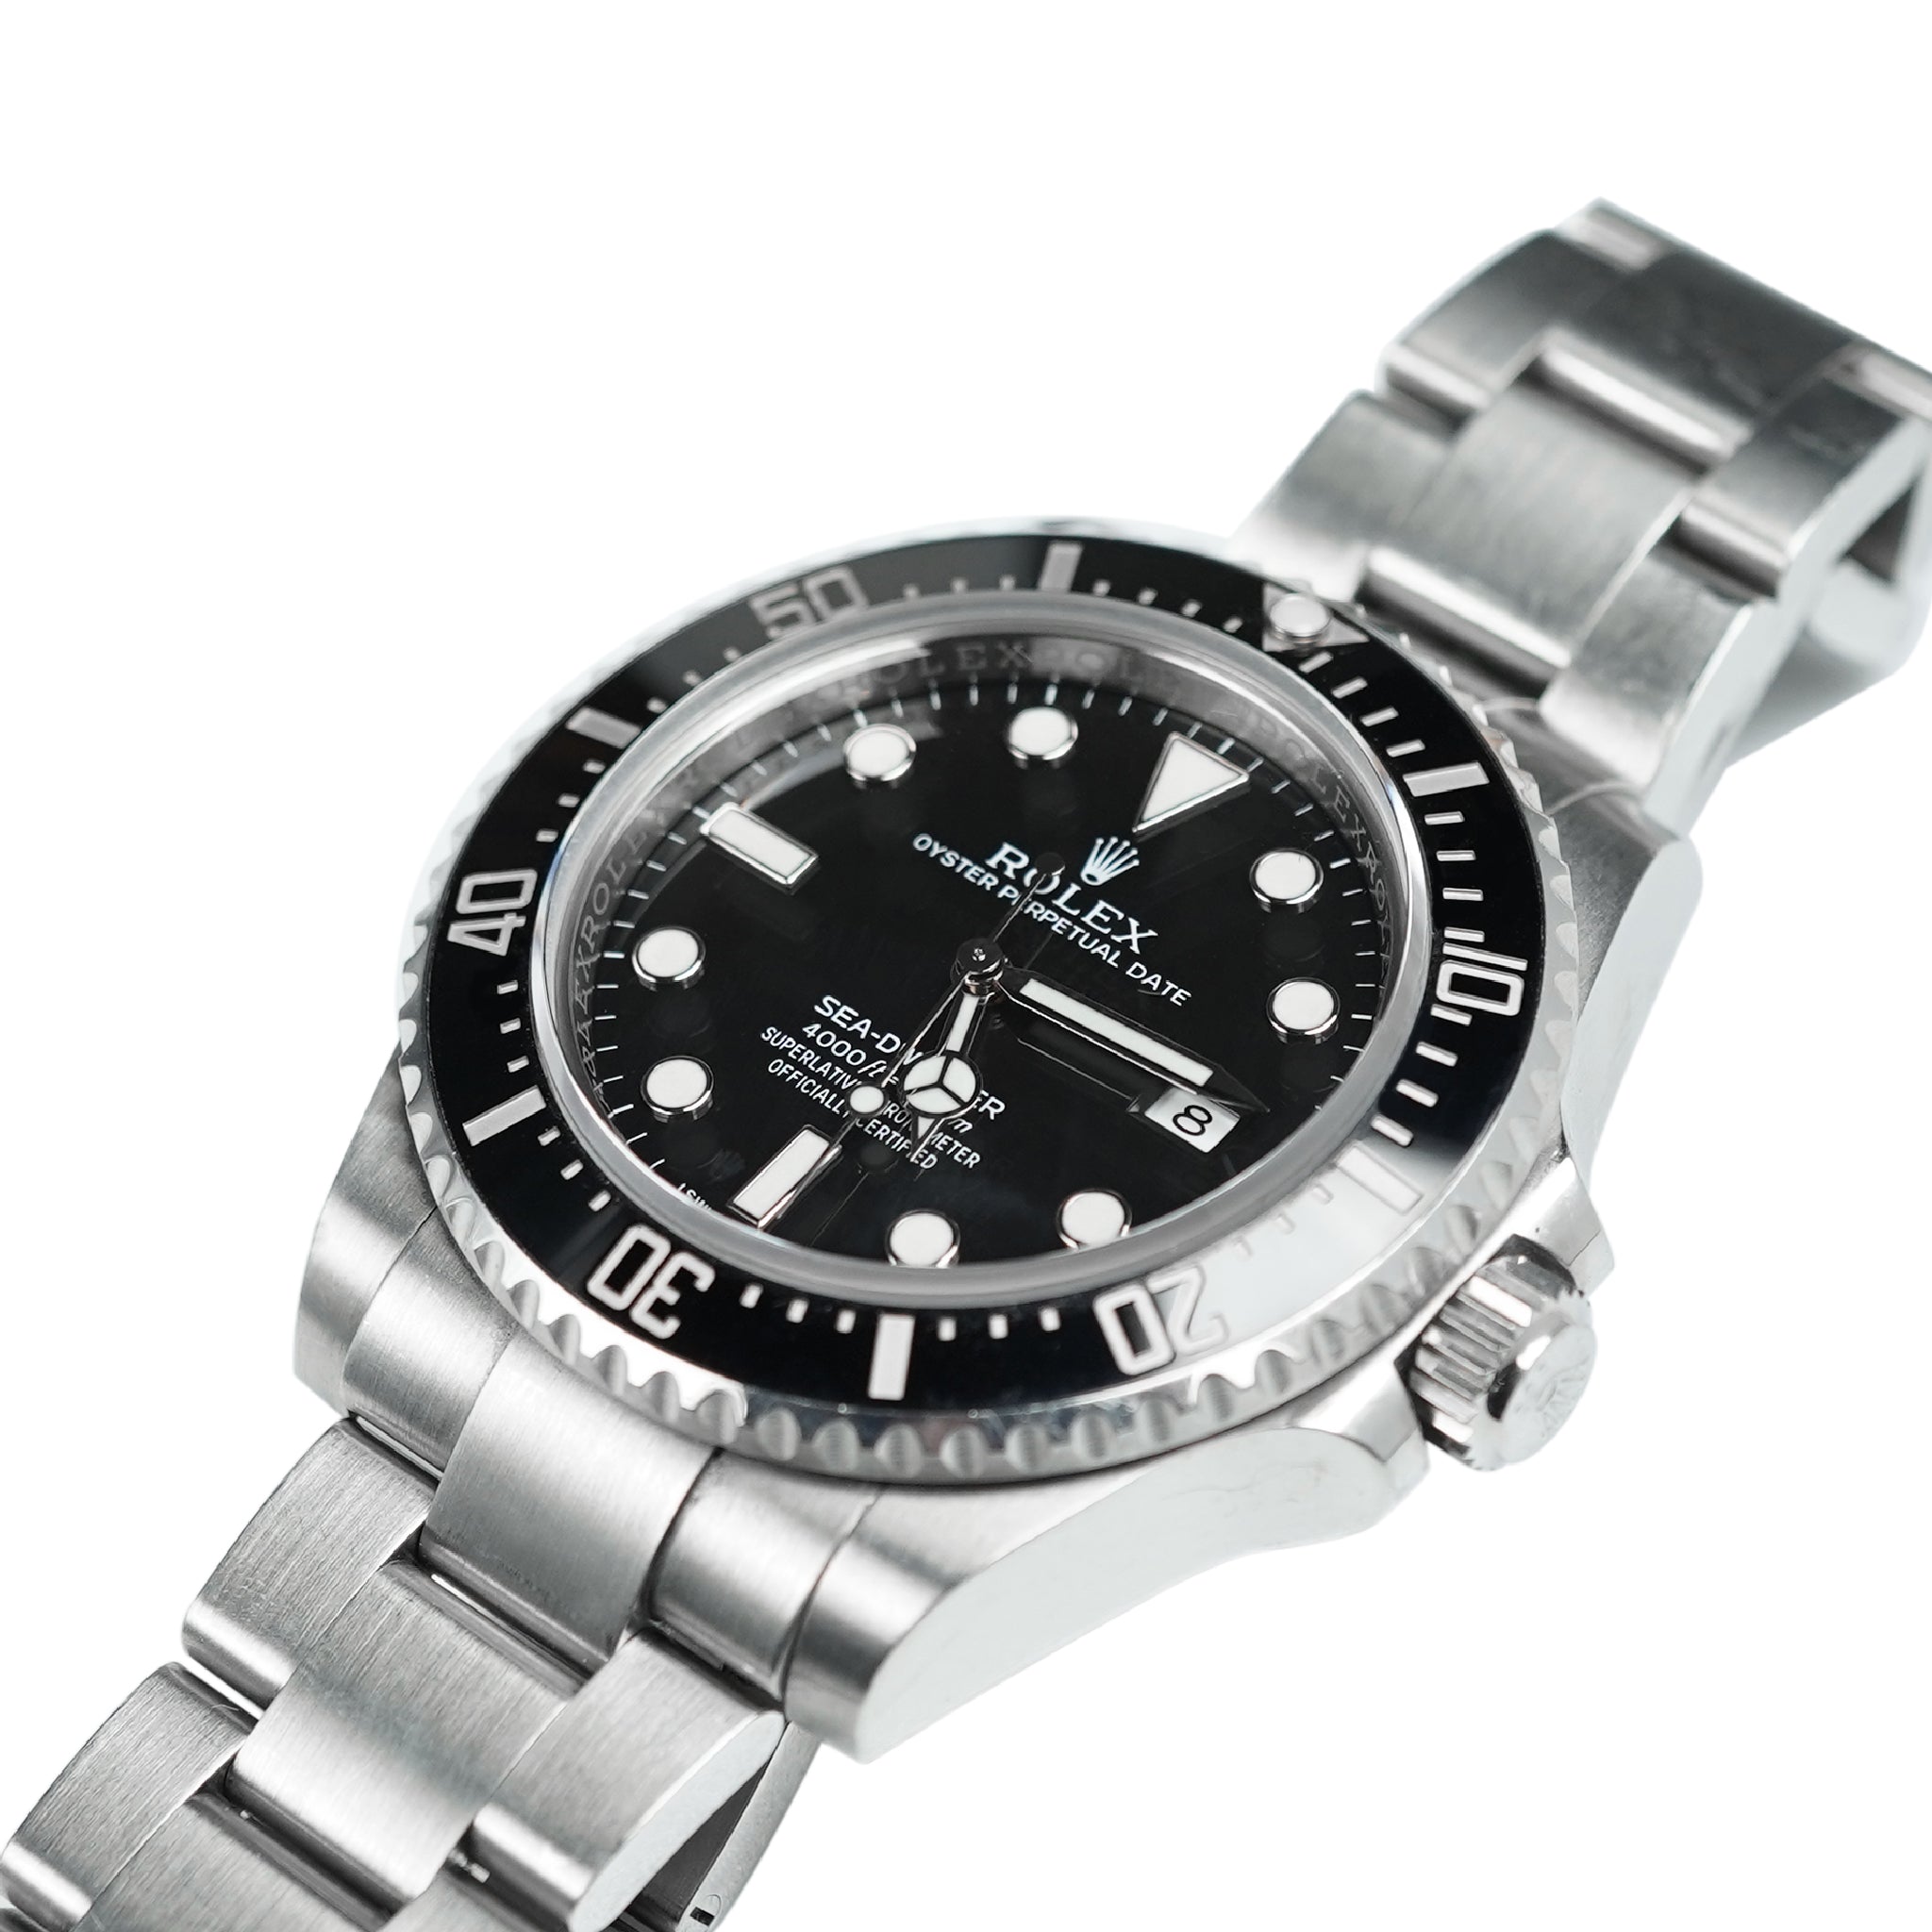 Rolex Sea-Dweller 4000 Automatic 40mm Steel Men's Bracelet Watch Date (Discontinued Model)